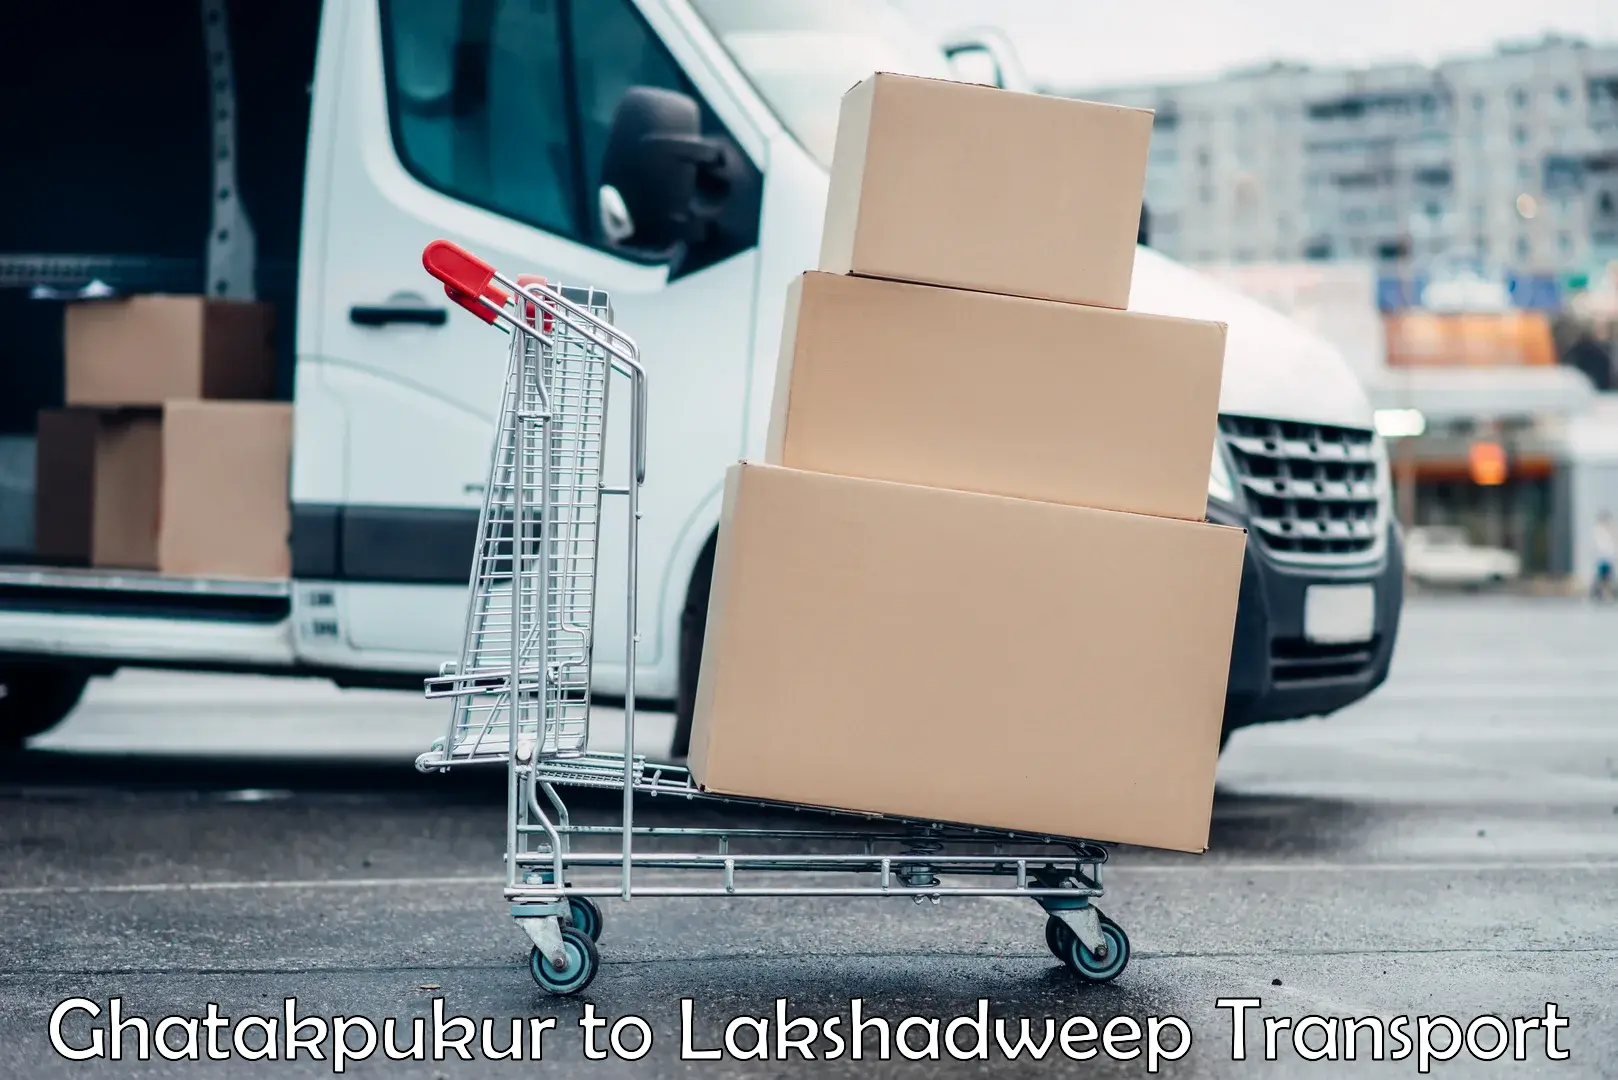 Furniture transport service Ghatakpukur to Lakshadweep